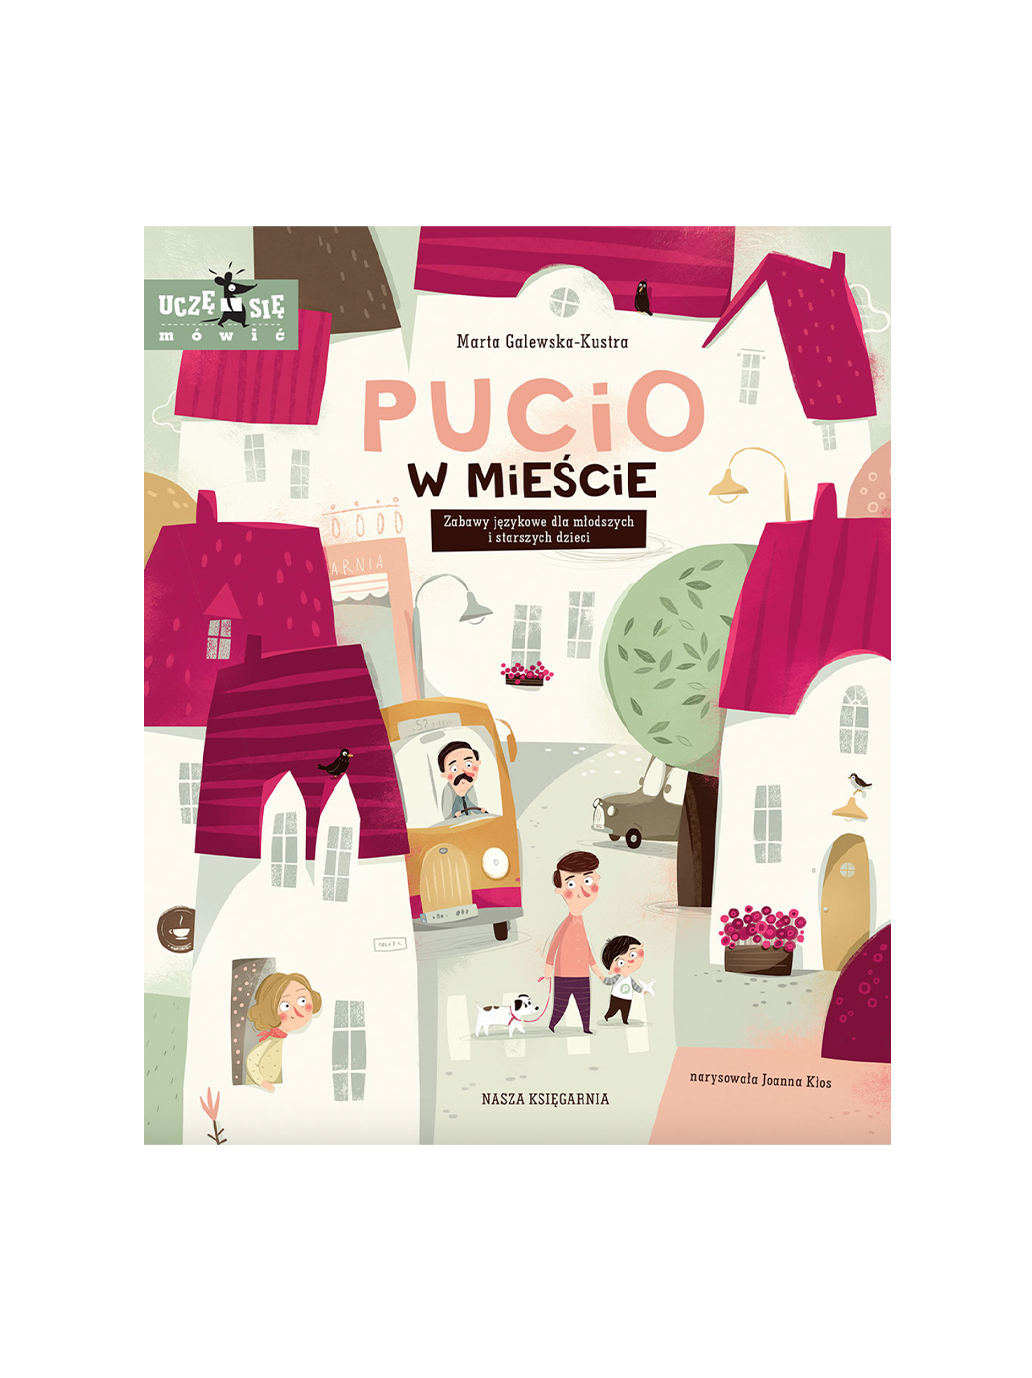 Pucio in der Stadt. Sprachspiele für jüngere und ältere Kinder